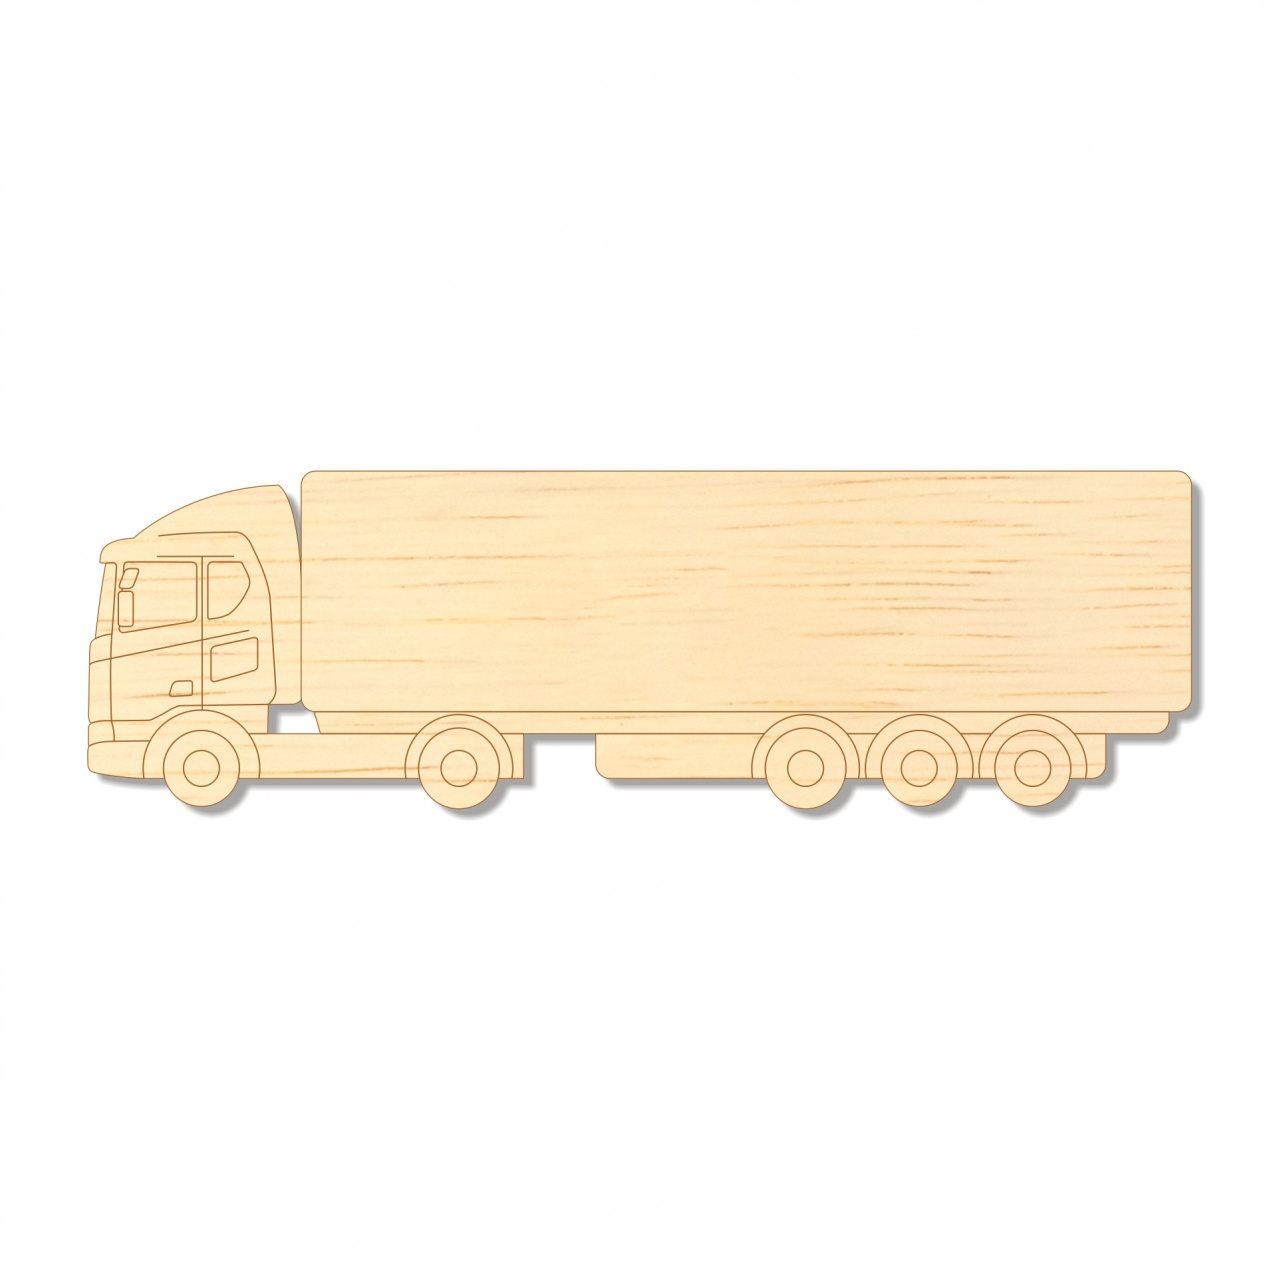 Camion TIR, 20×6 cm, placaj lemn